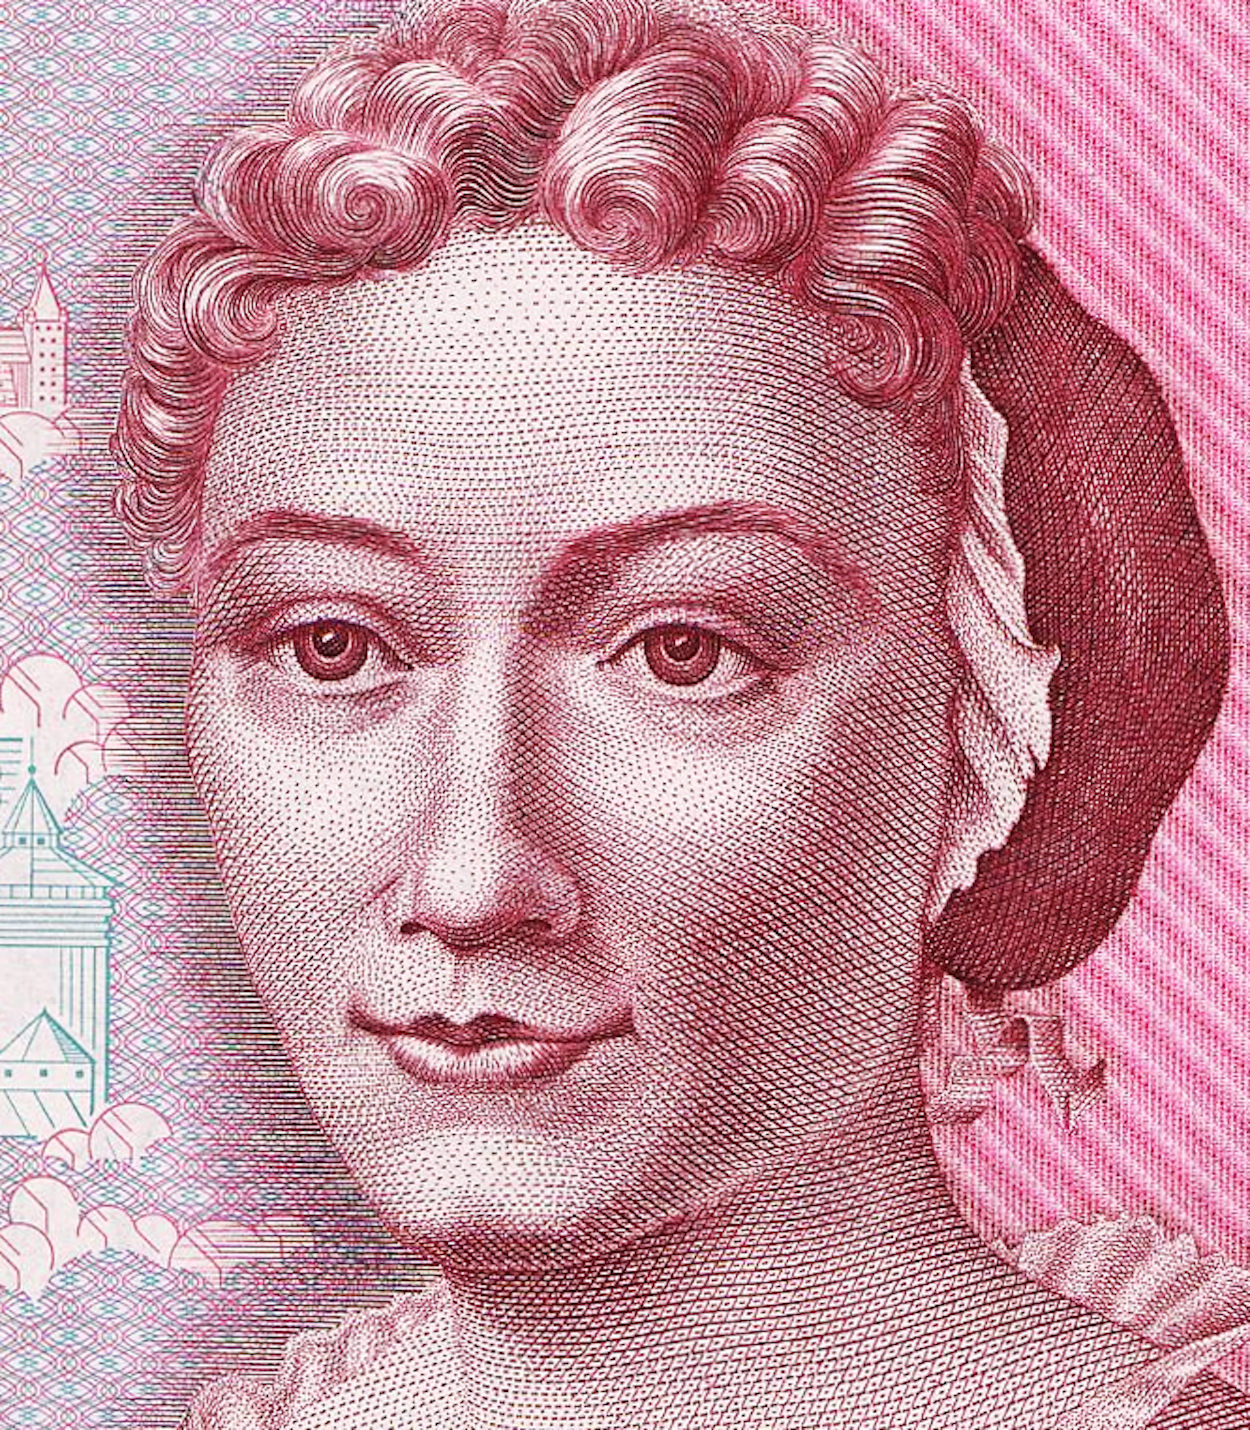 Maria Sibylla Merian - 2 avril 1647 - 13 janvier 1717